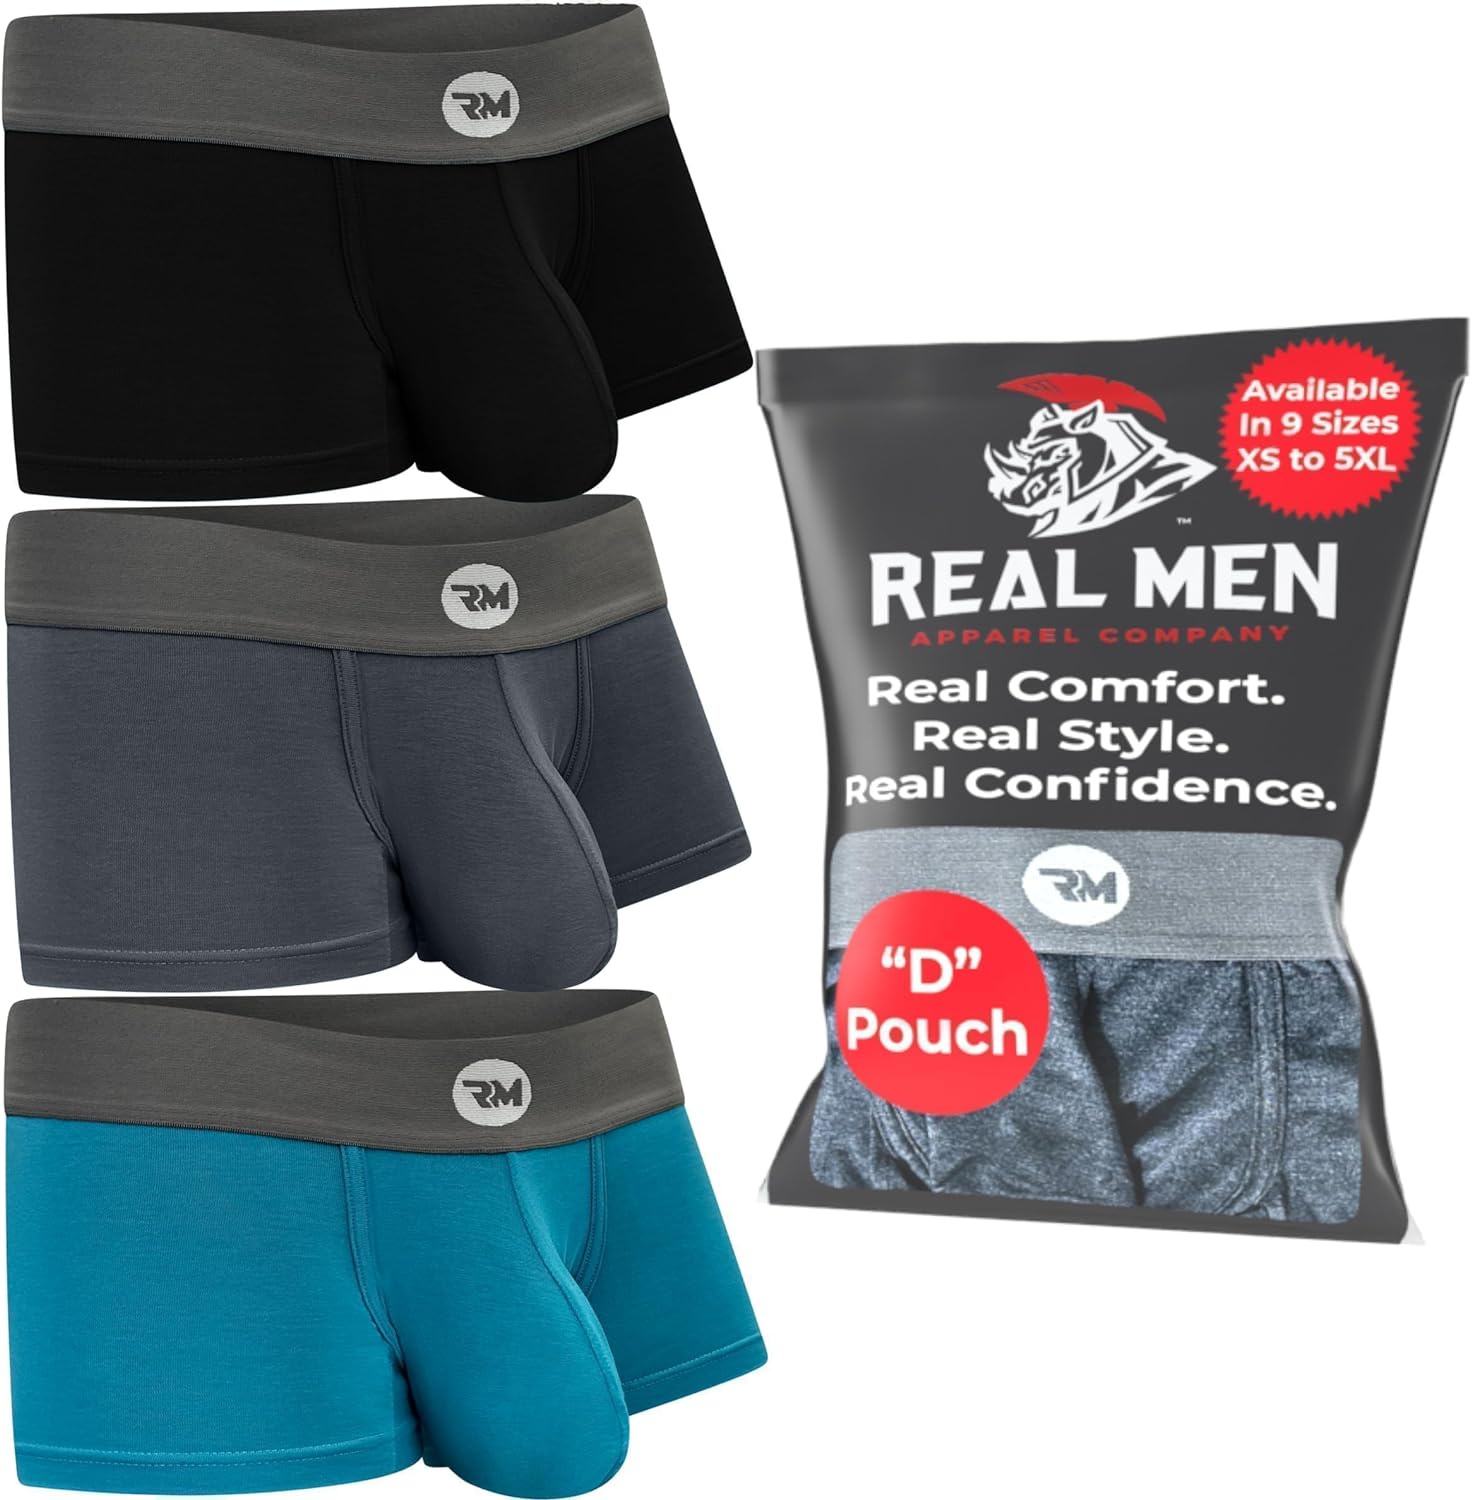 Men's Underwear - GENUINE AUTHENTIC BRAND LLC